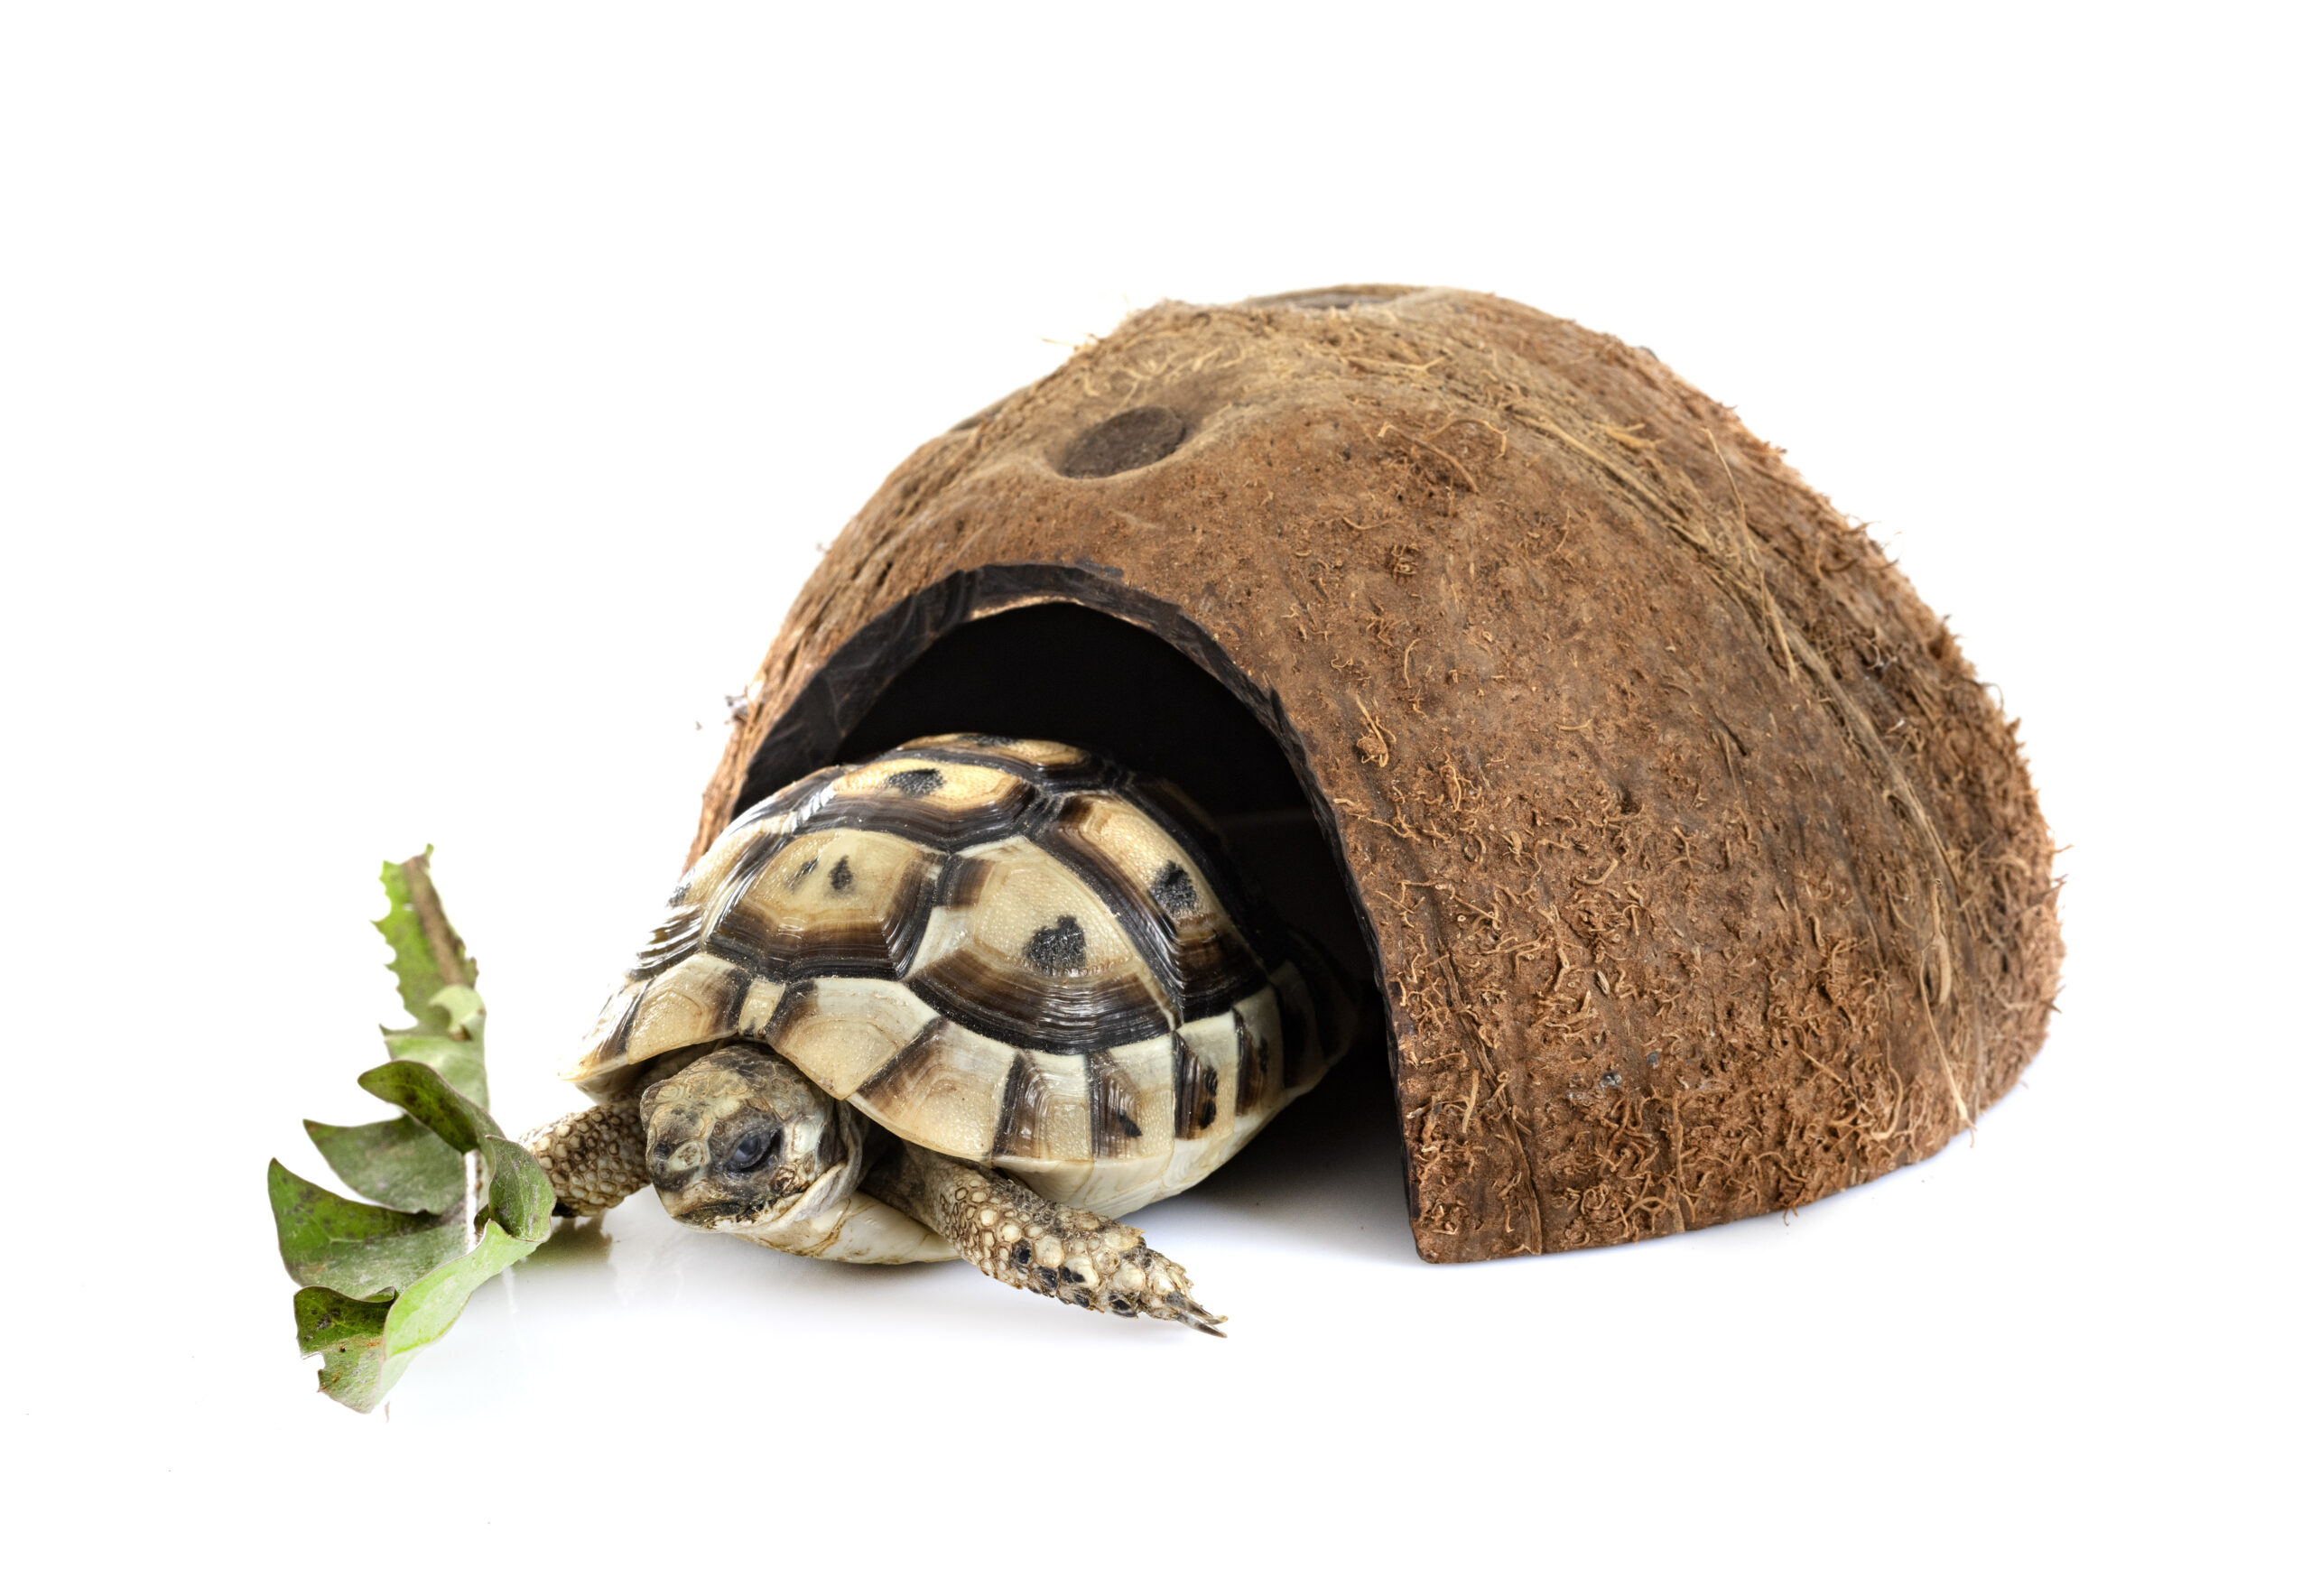 Greek tortoise in studio